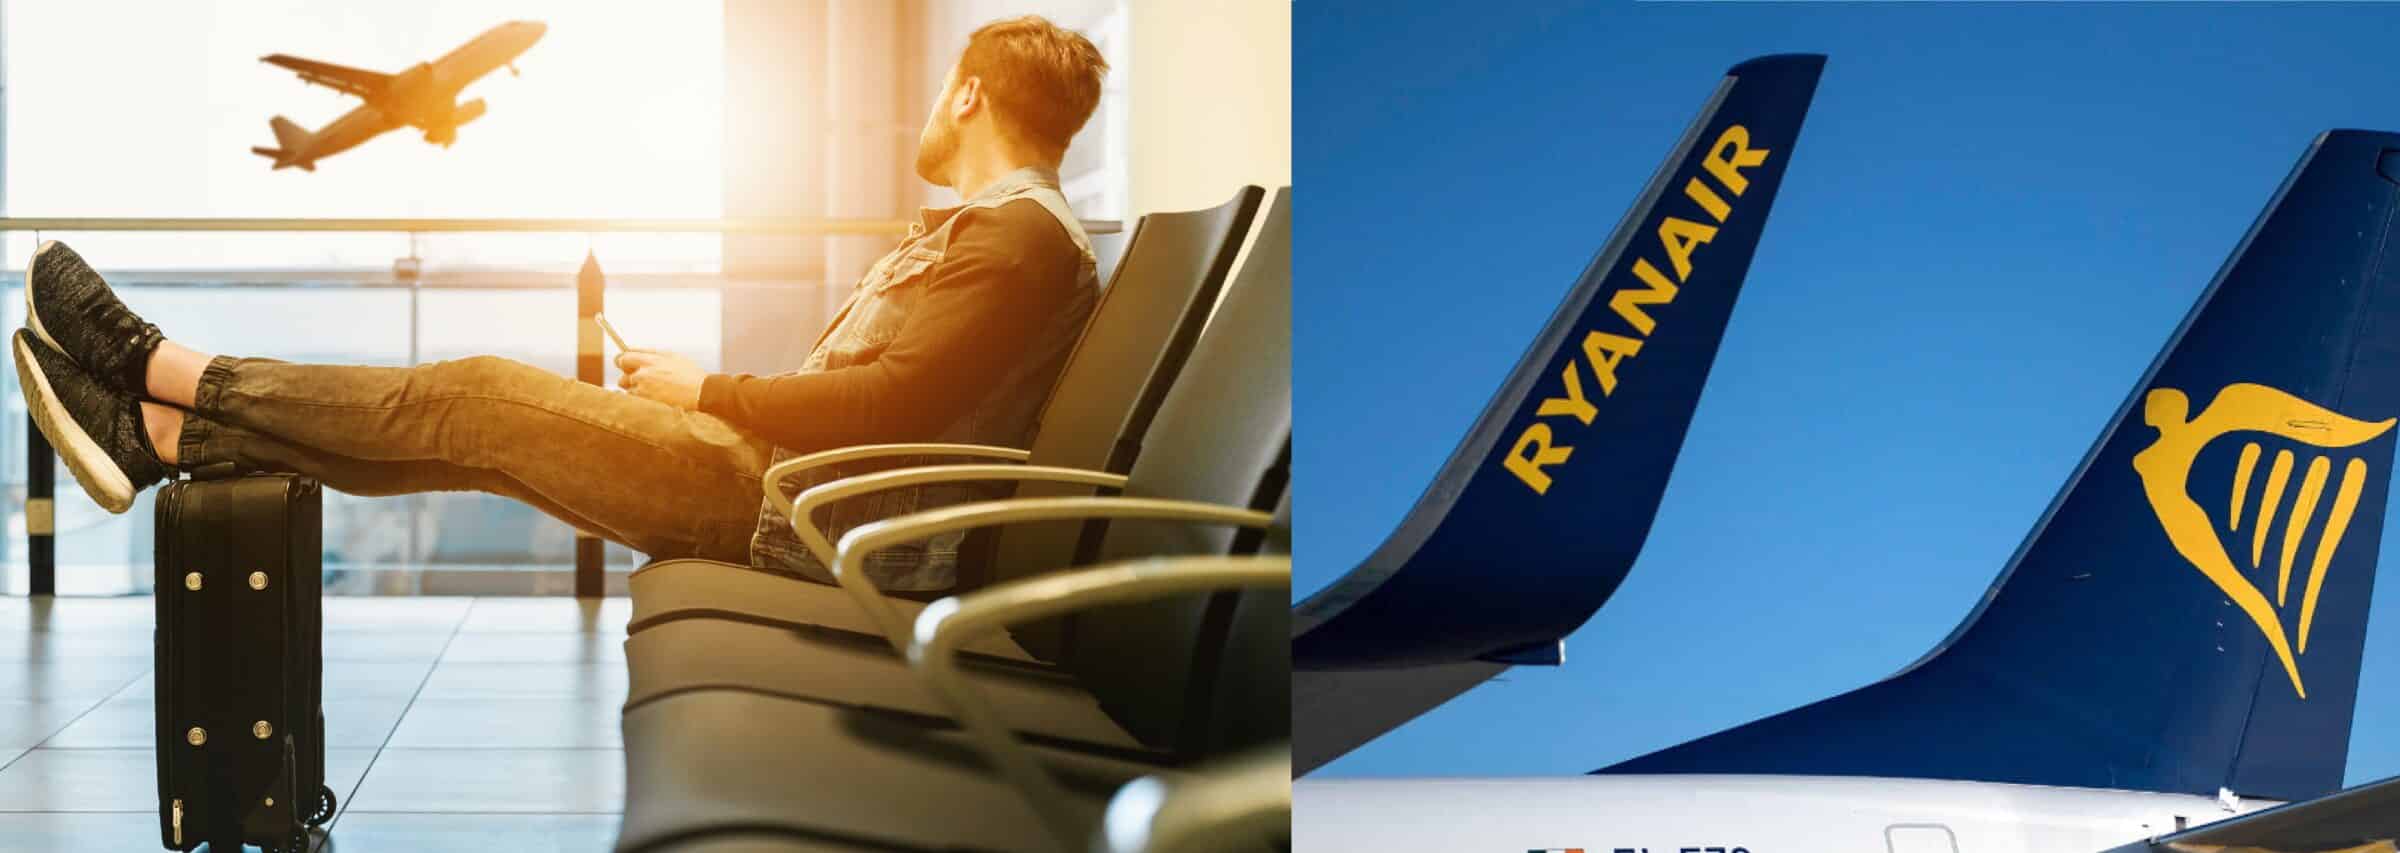 Ritardo di 4 ore sul volo Catania-Roma, Ryanair condannata a risarcire il passeggero anche per i danni non patrimoniali